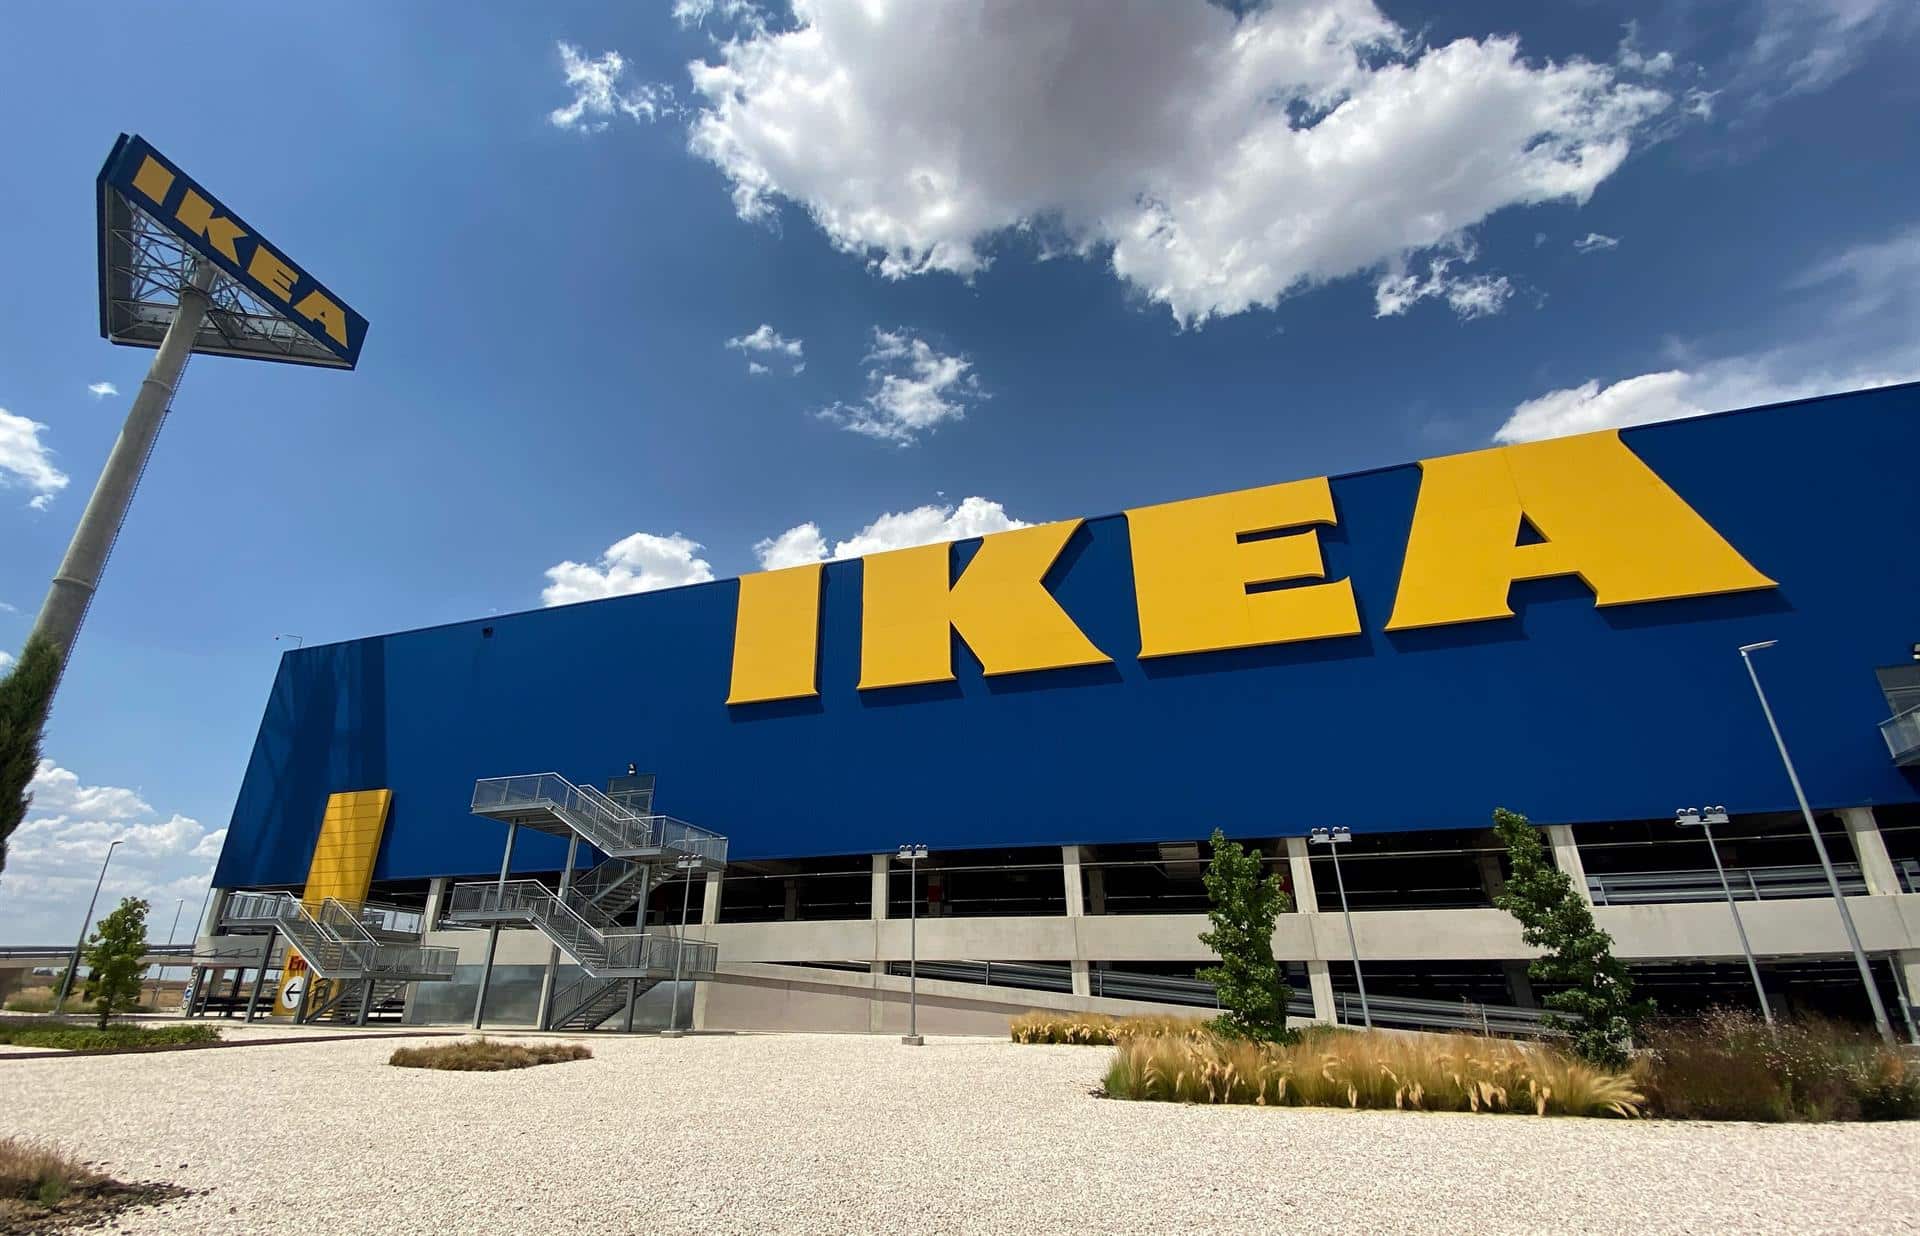 Fachada y zonas exteriores pertenecientes a la tienda Ikea de Villaviciosa de Odón, en Madrid.